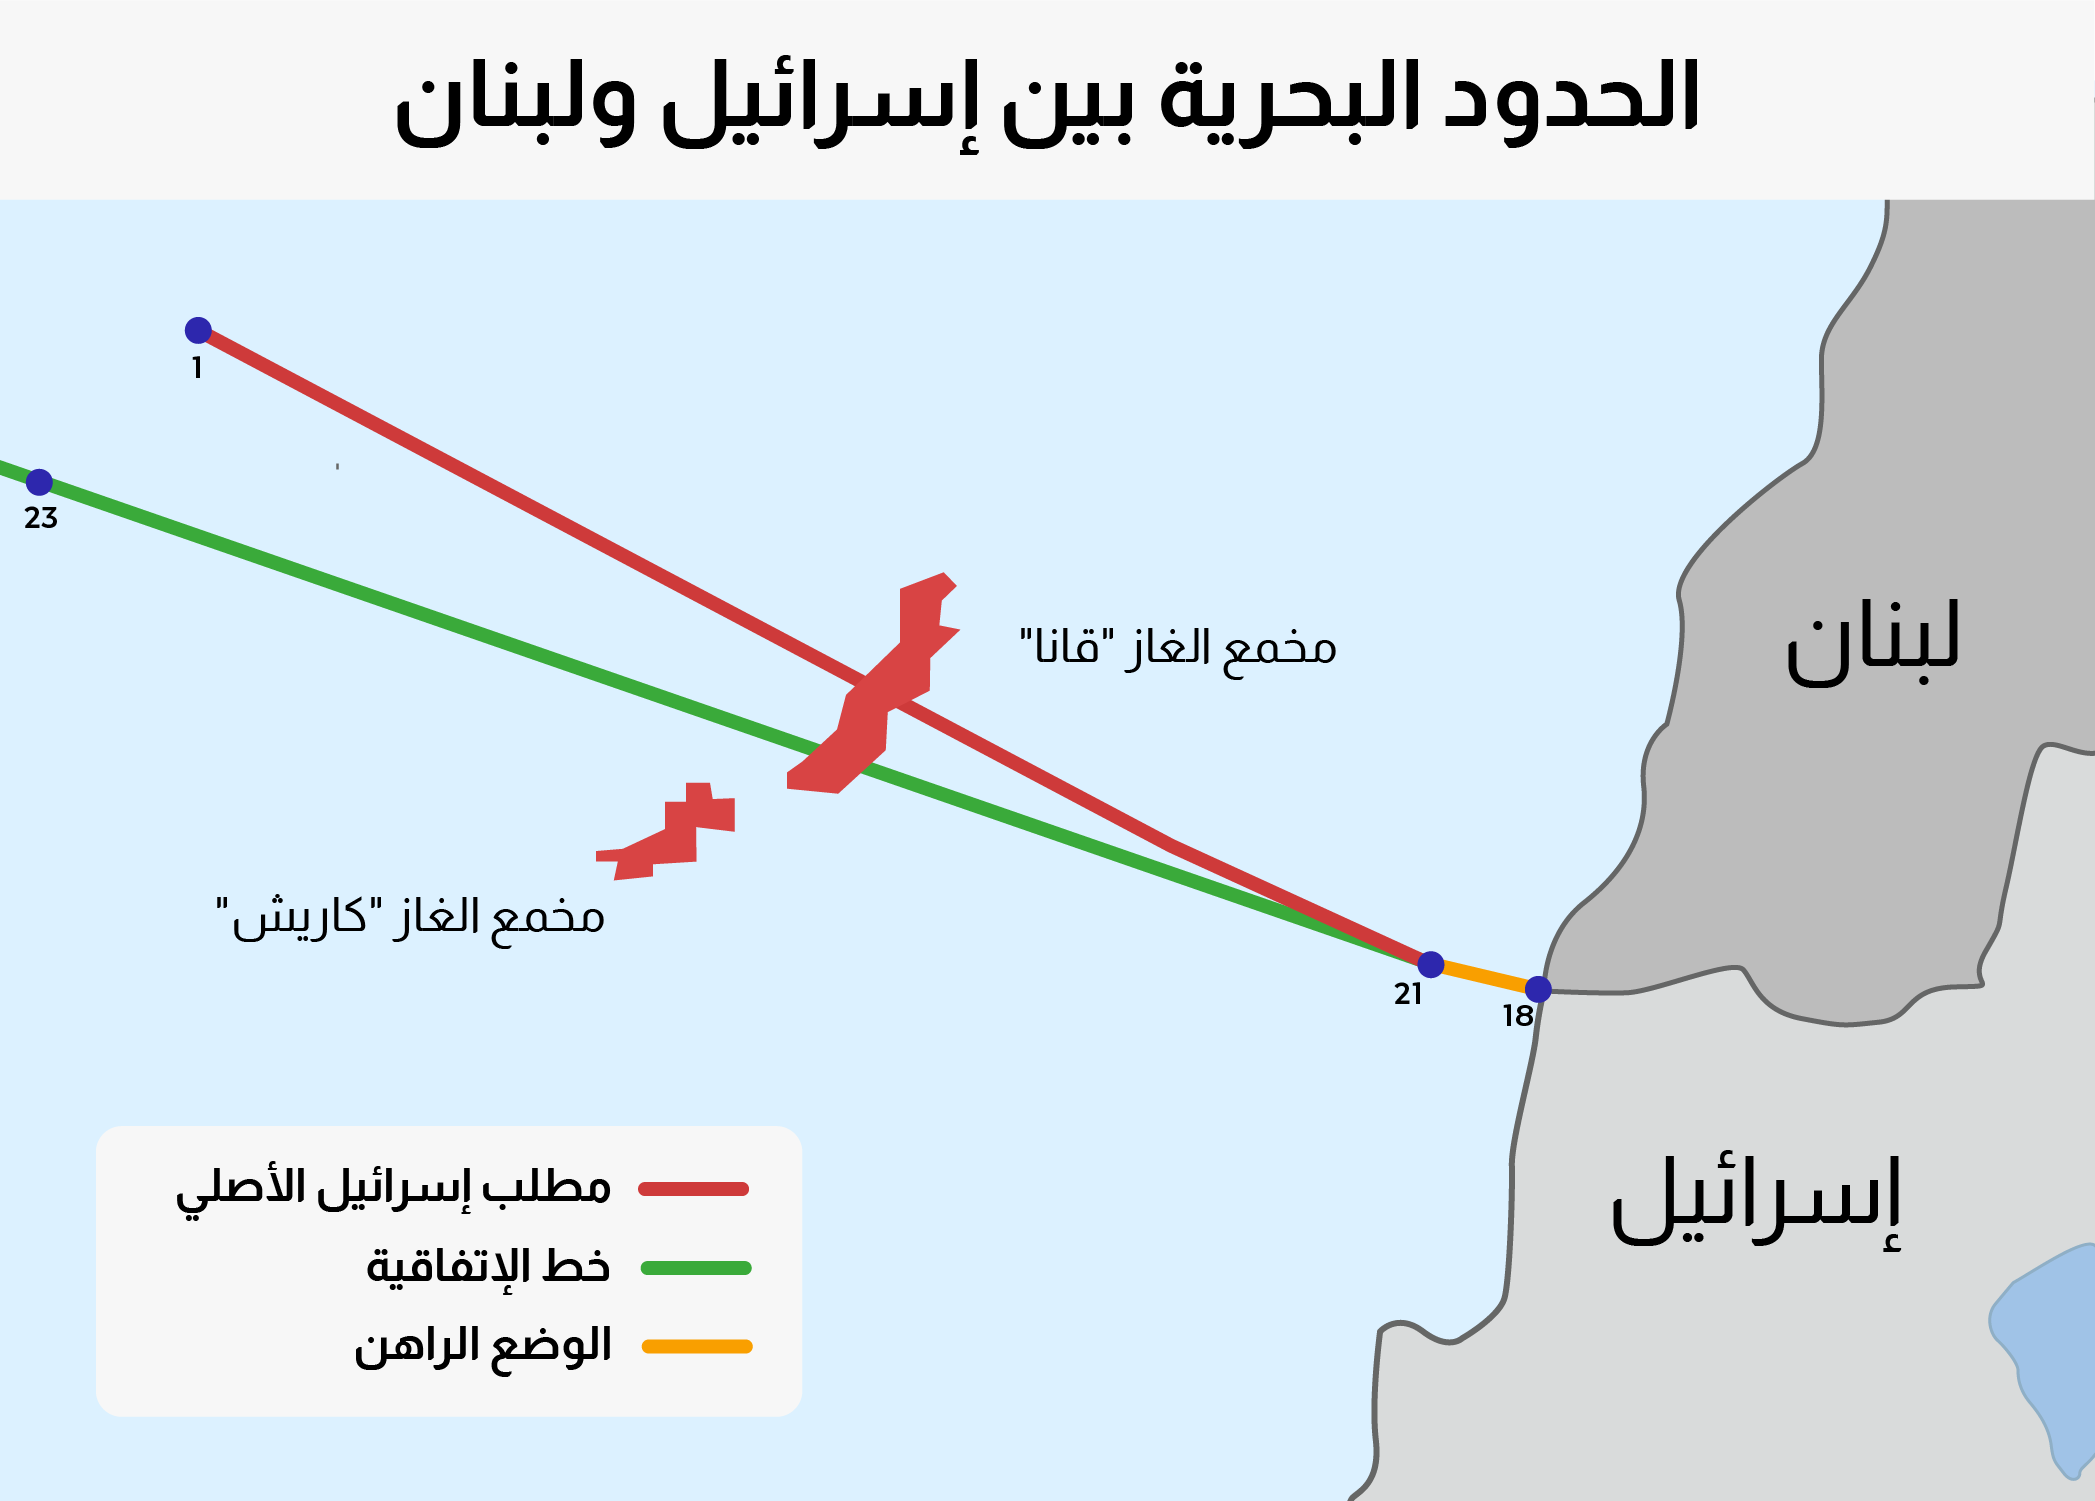 الحدود البحرية بين إسرائيل ولبنان (تصميم: دافار)